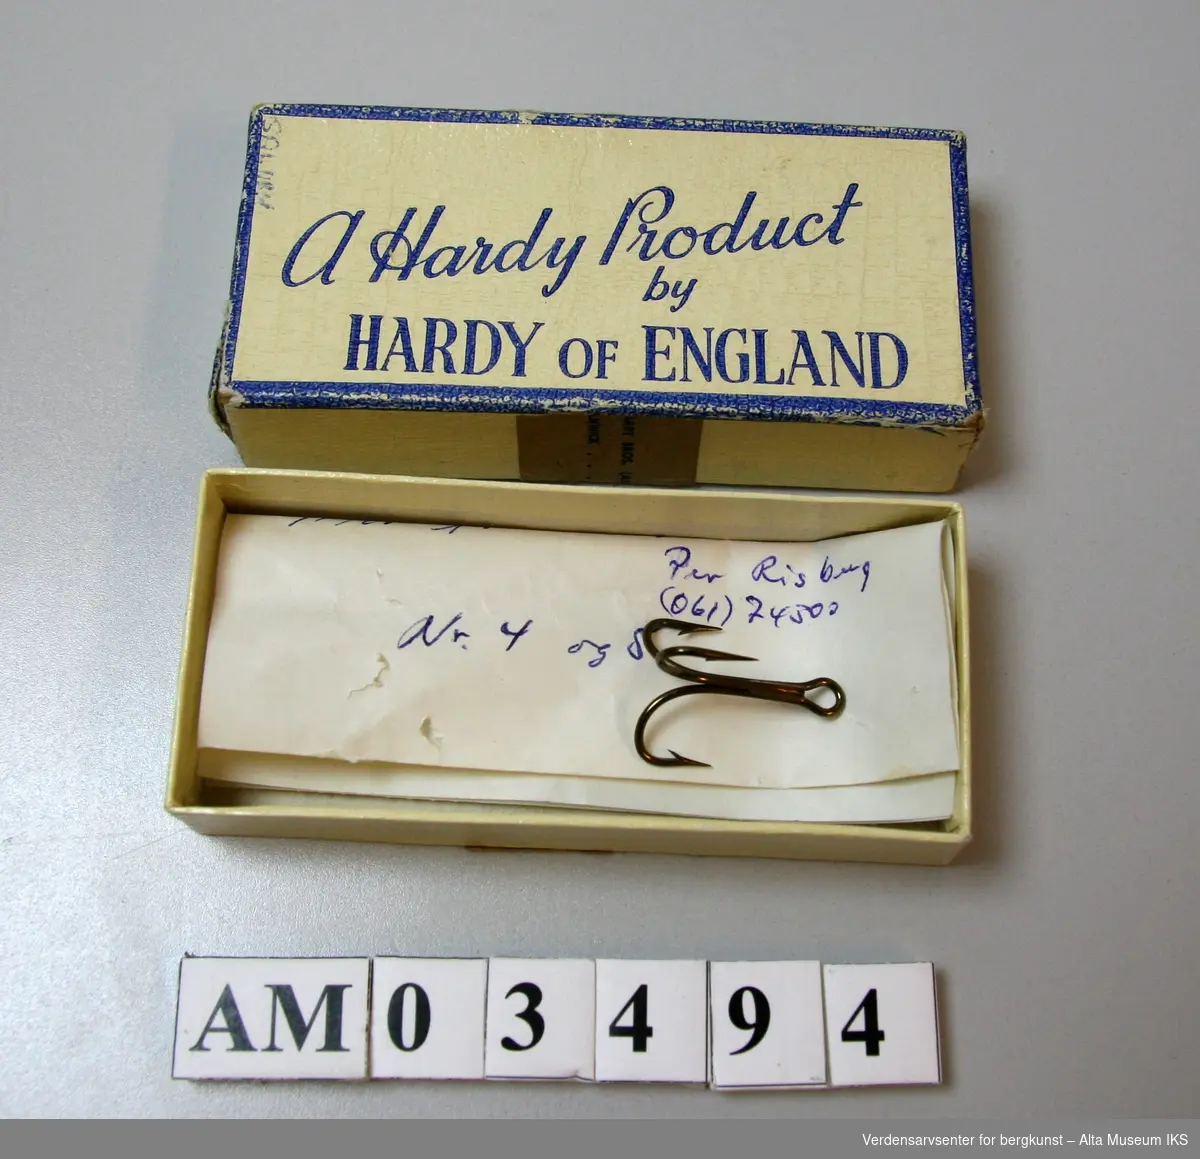 Pappeske med påtrykt "A Hardy Product by Hardy of England" på lokket. 

Inneholder en trippelkrok og en håndskrevet lapp med teksten: 

"Mustad 7228 EBB Superior Nr 1

Mustad 
Per Risberg
(061)74300
Nr 4 og 5"